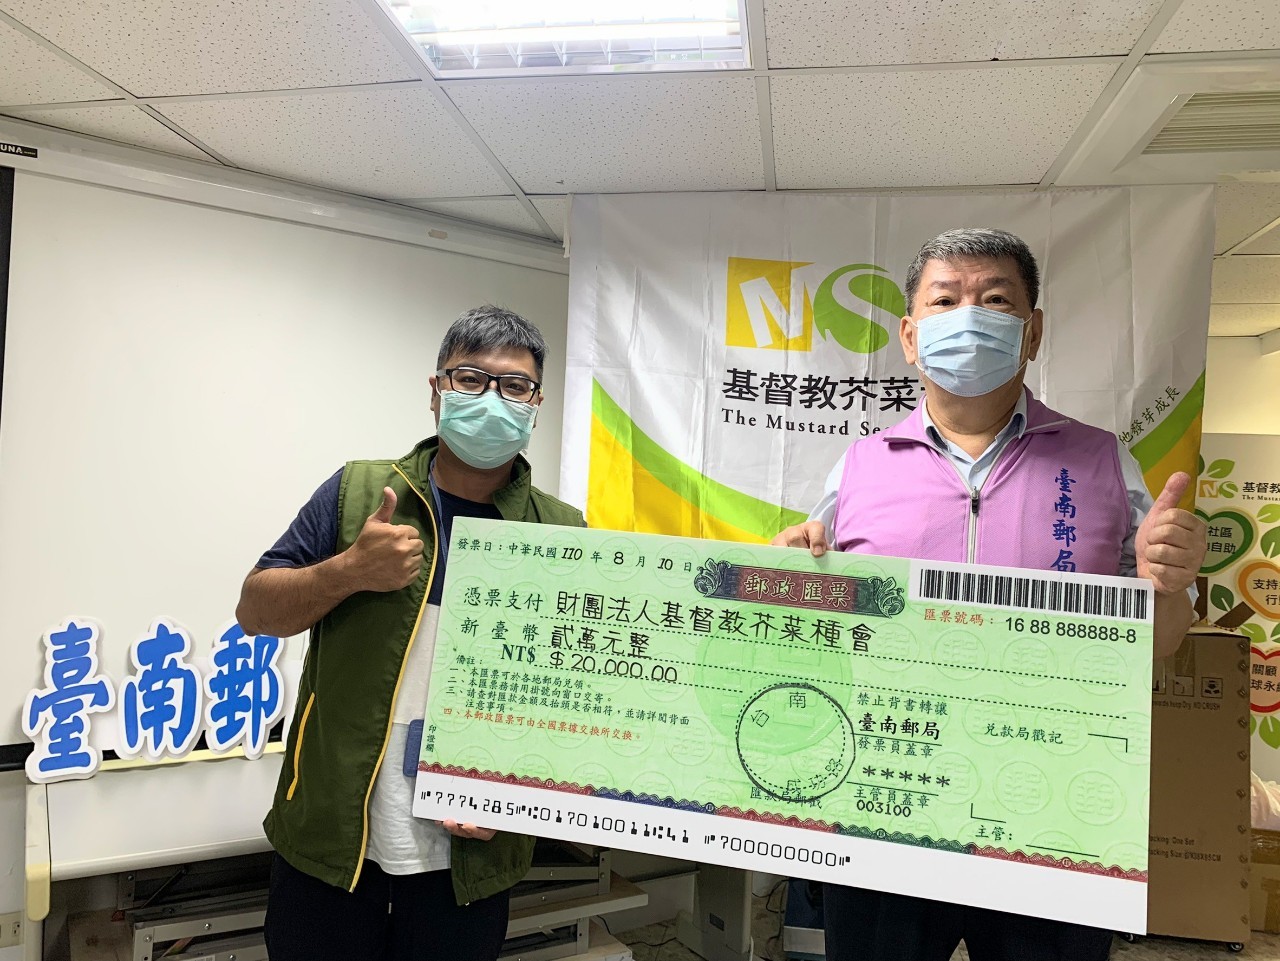 臺南郵局關懷農產行銷  鳳梨所得捐贈芥菜種會做公益